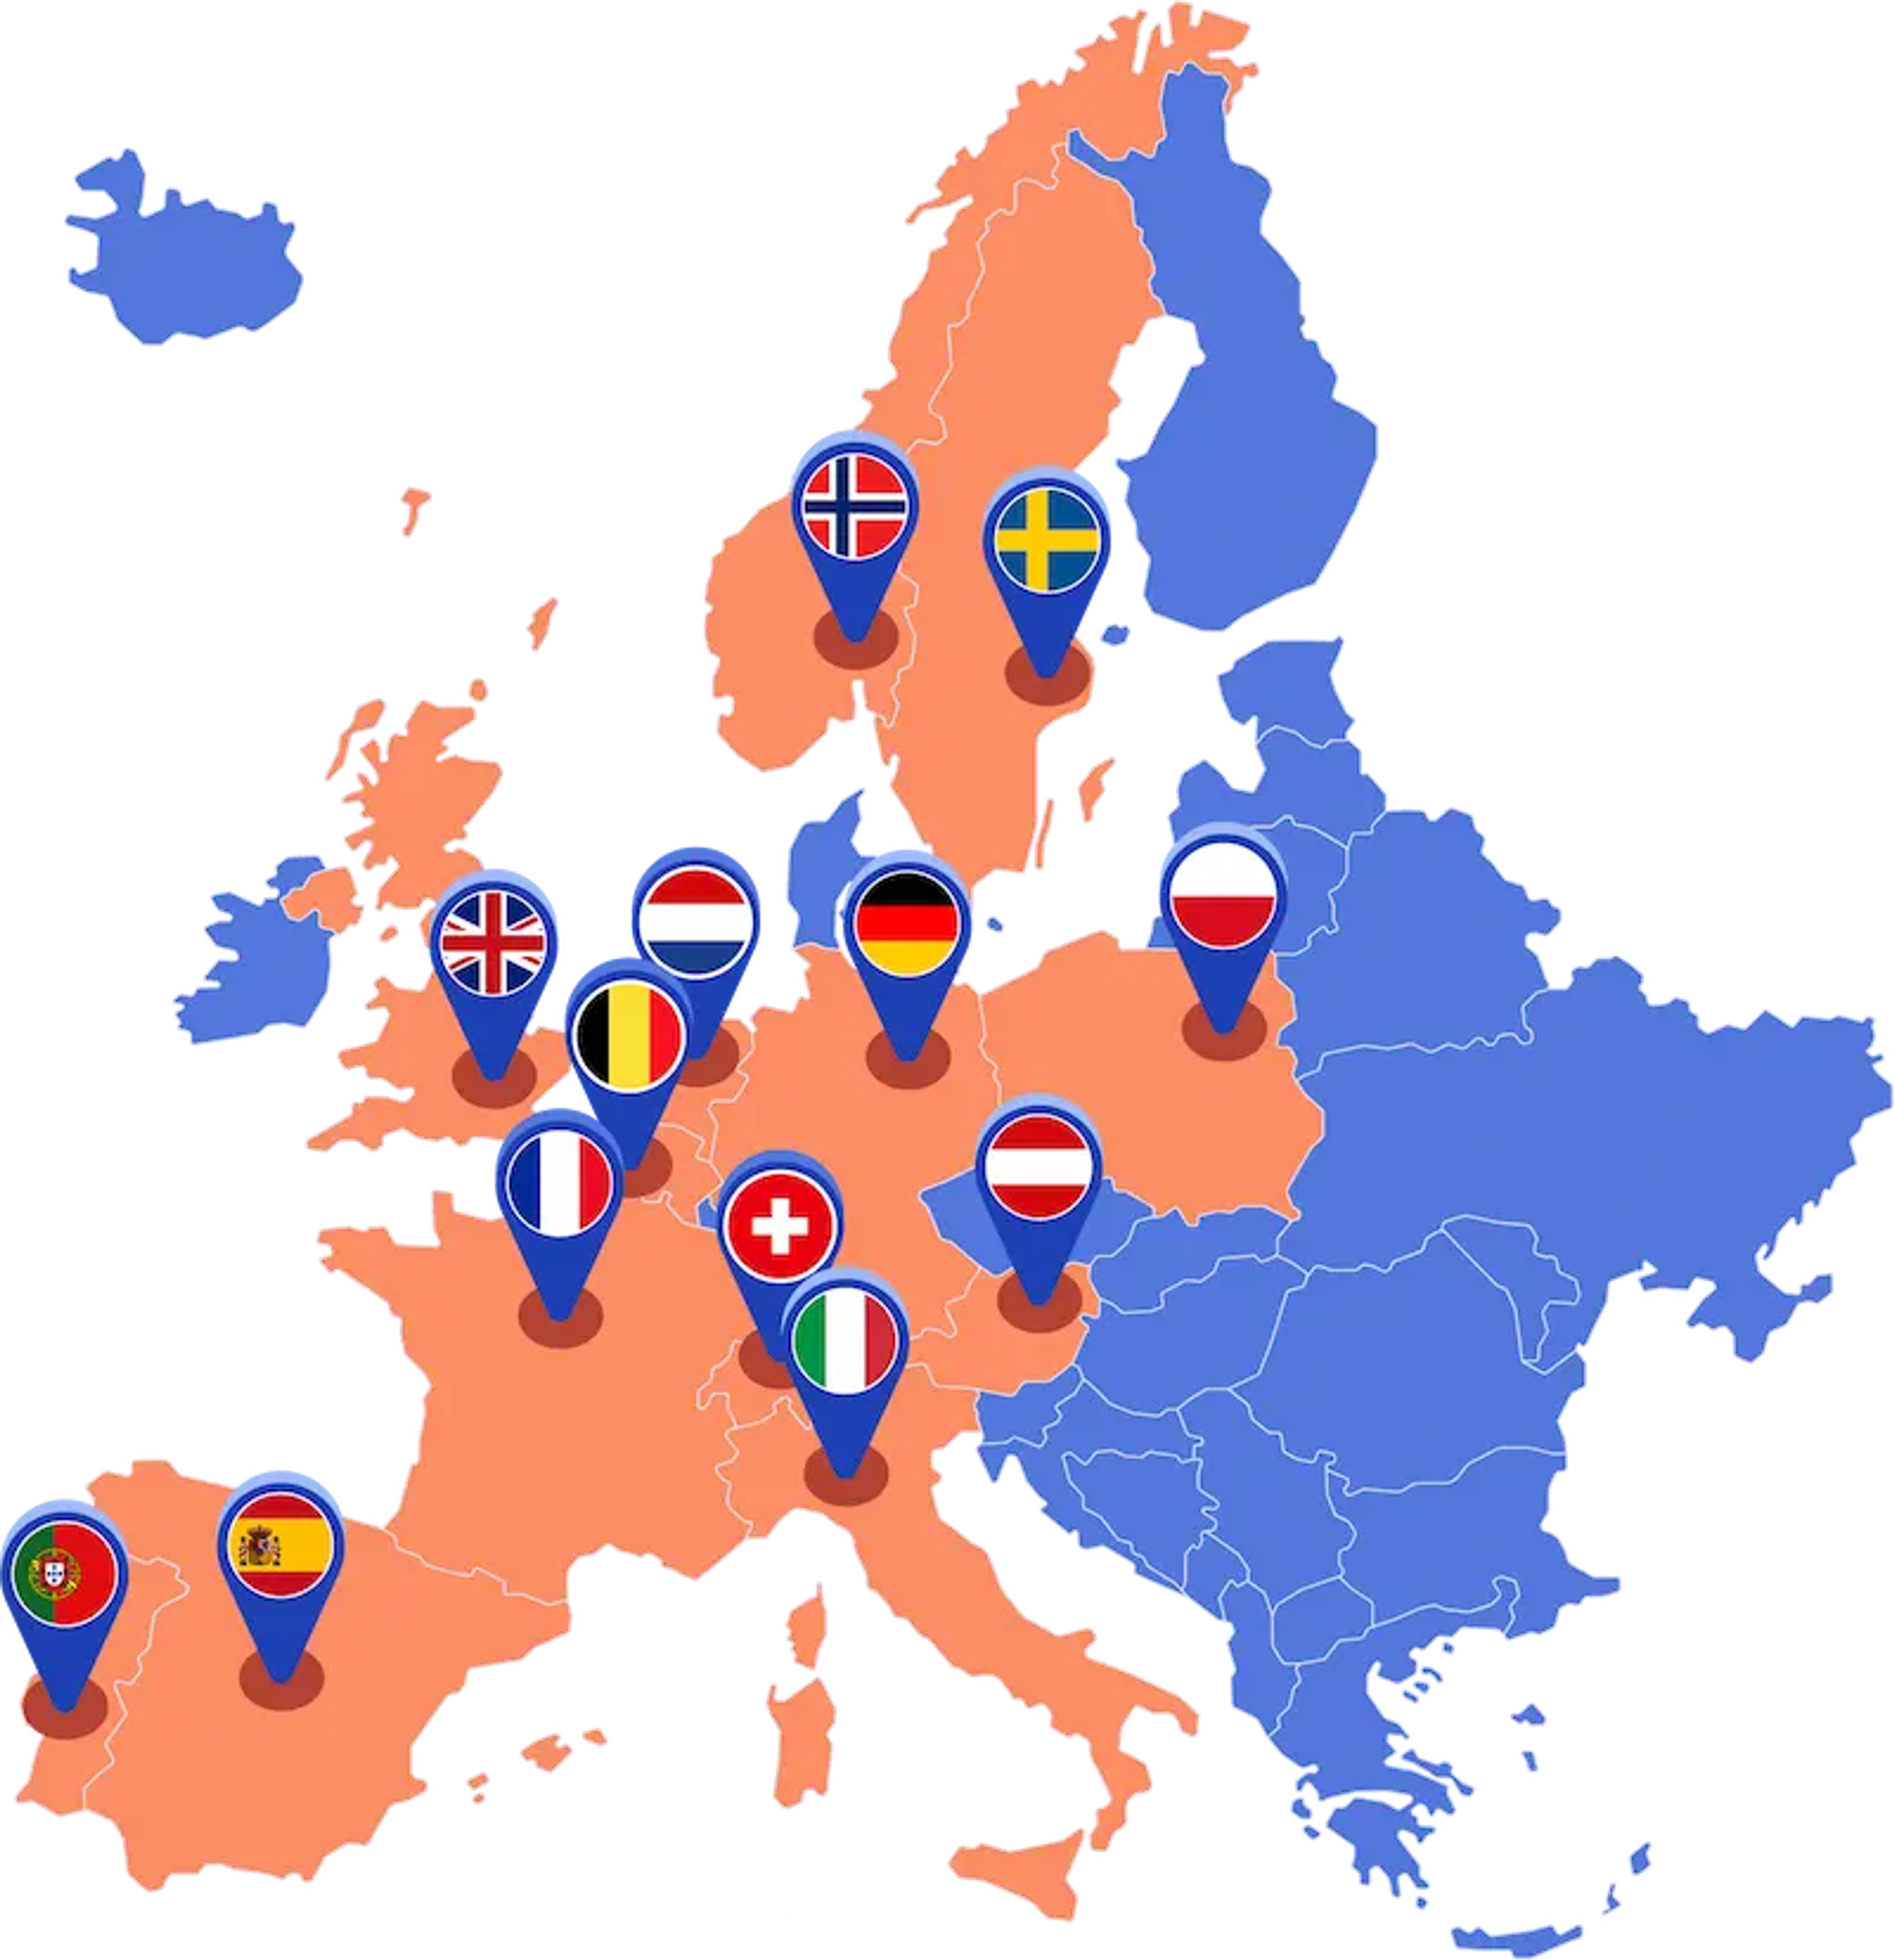 Eine Karte von Europa, auf der die 13 Länder, in denen Otovo aktiv ist, markiert sind.